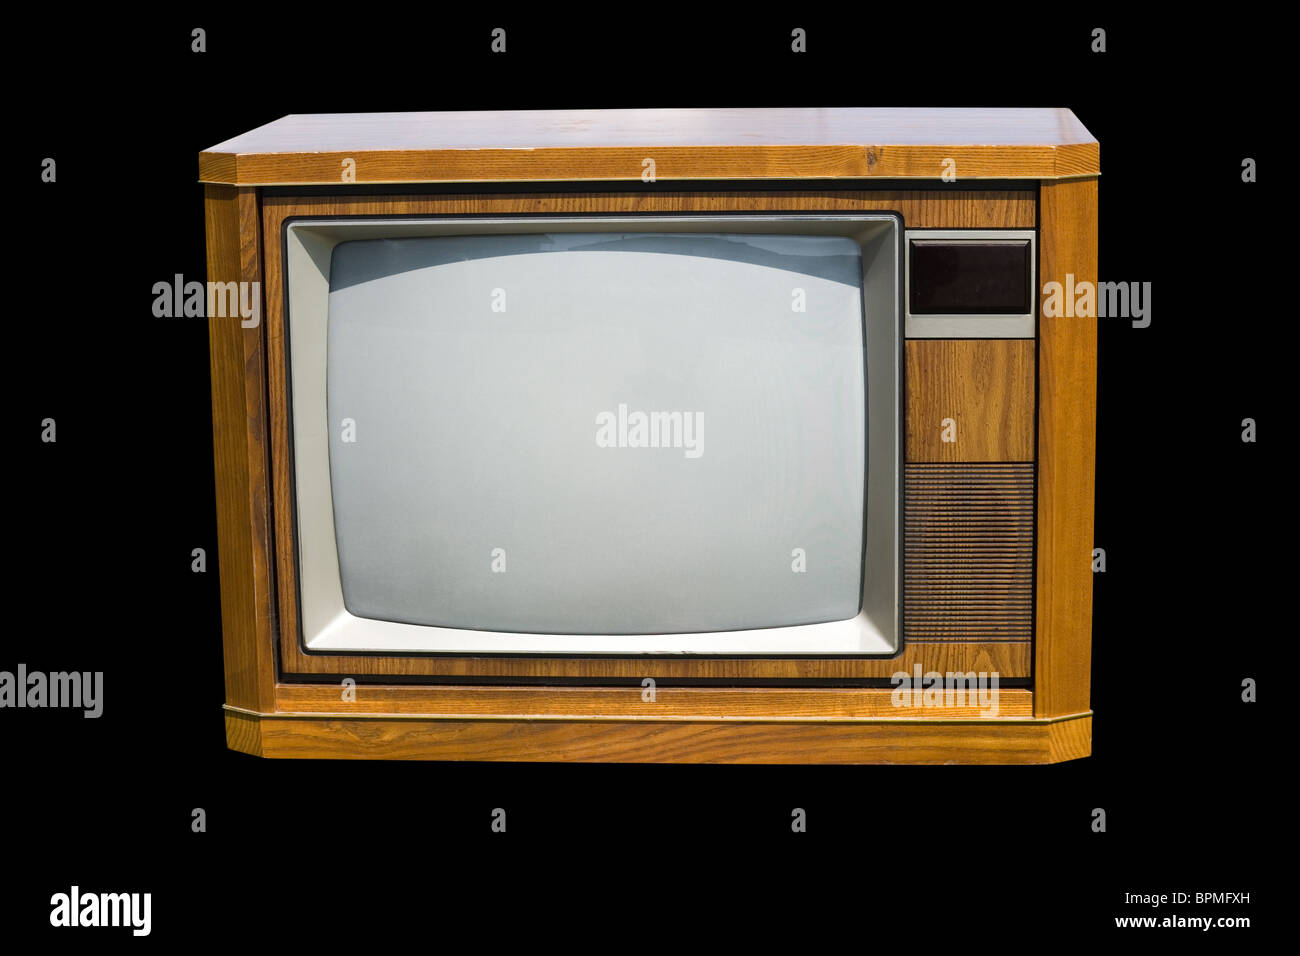 La télévision à l'ancienne sur fond noir Banque D'Images